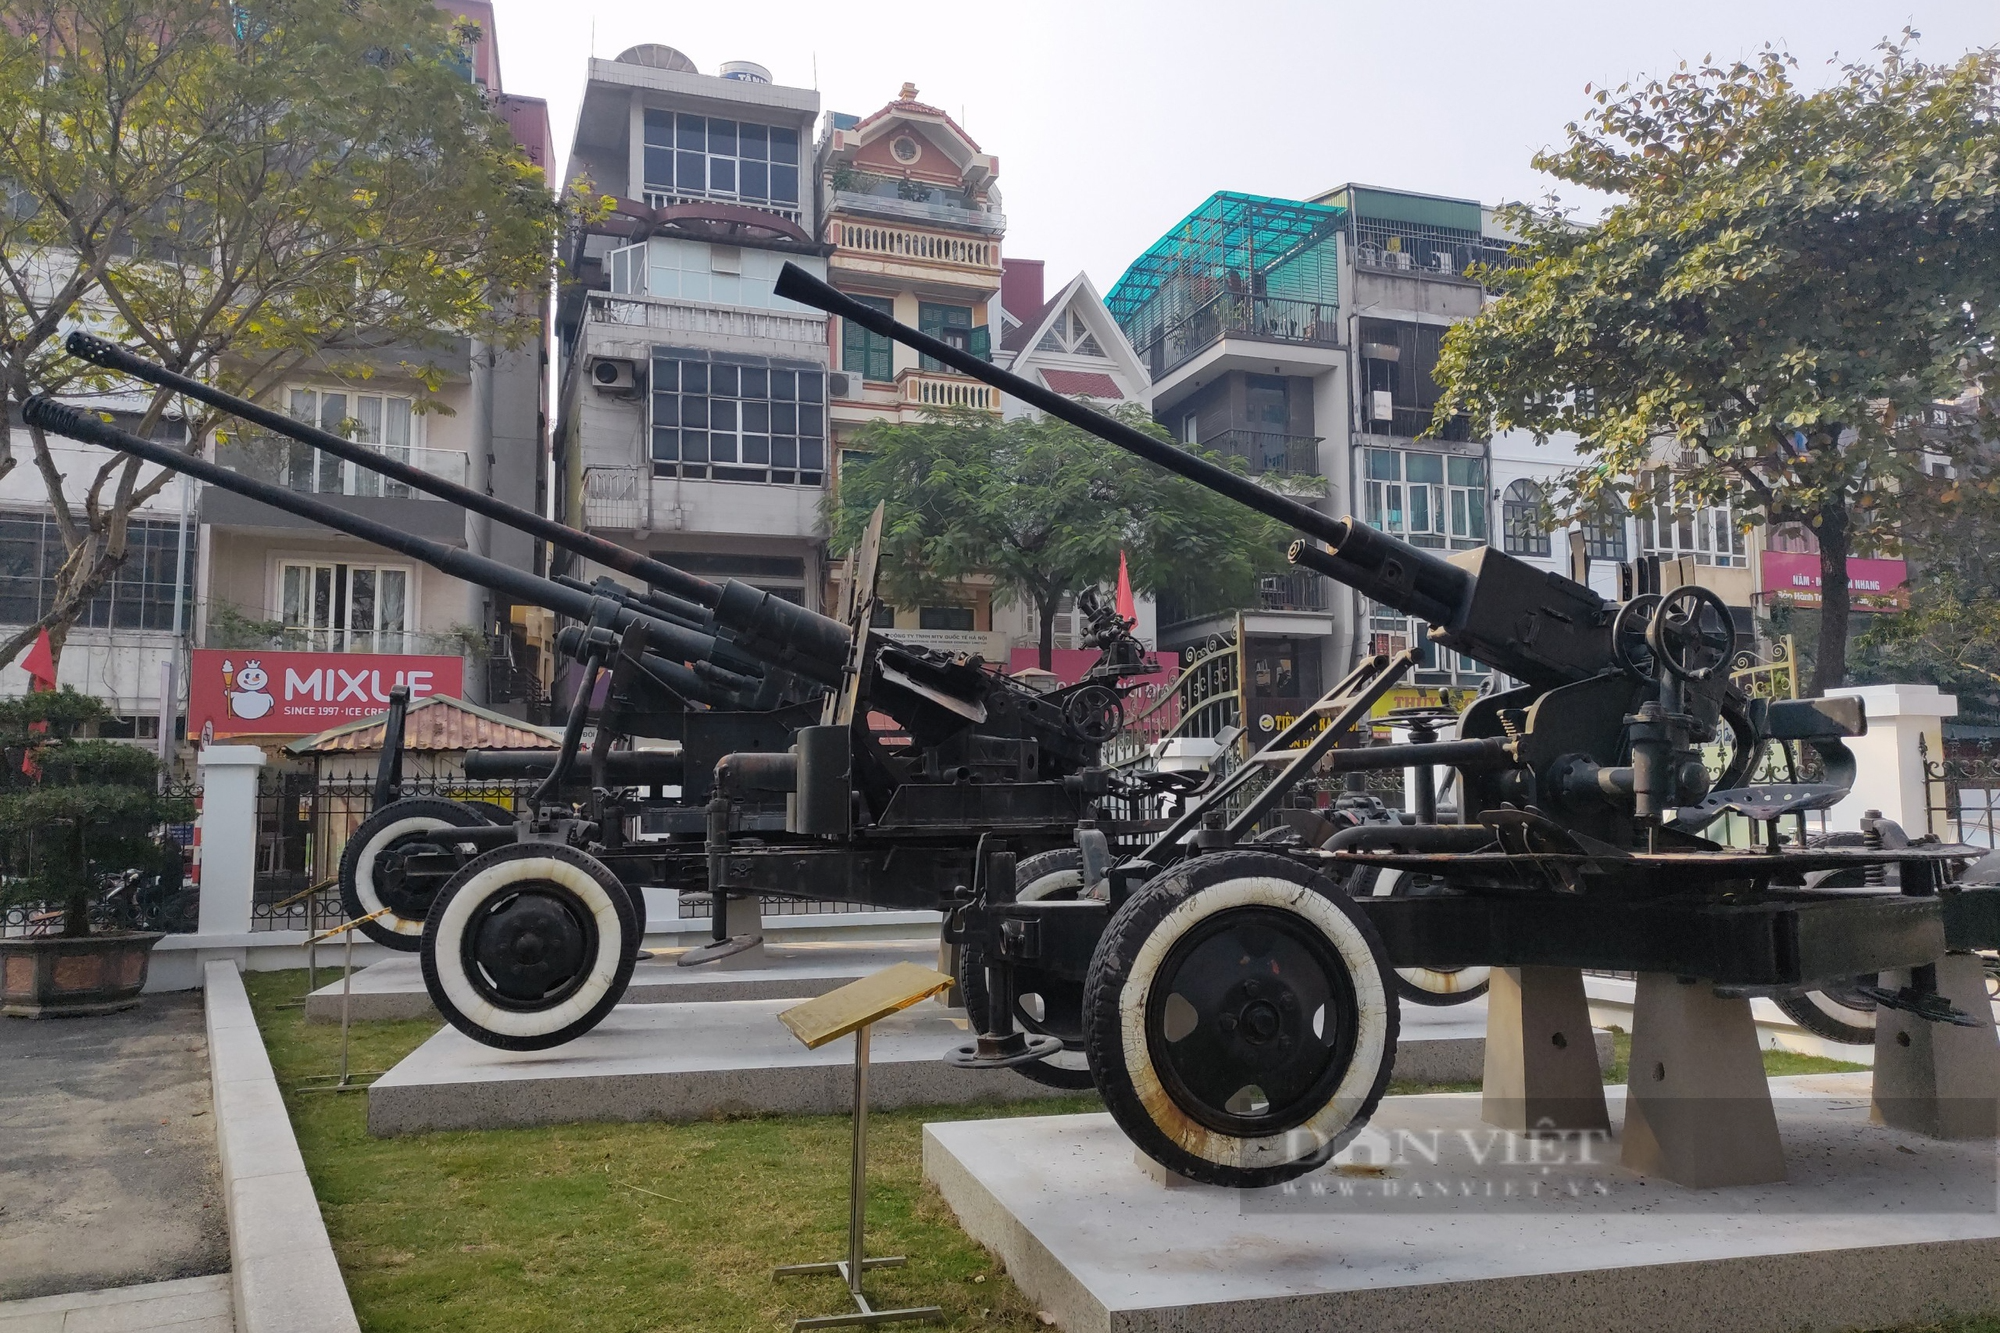 Cận cảnh dàn pháo cao xạ, súng máy bảo vệ Hà Nội năm 1972 - Ảnh 7.